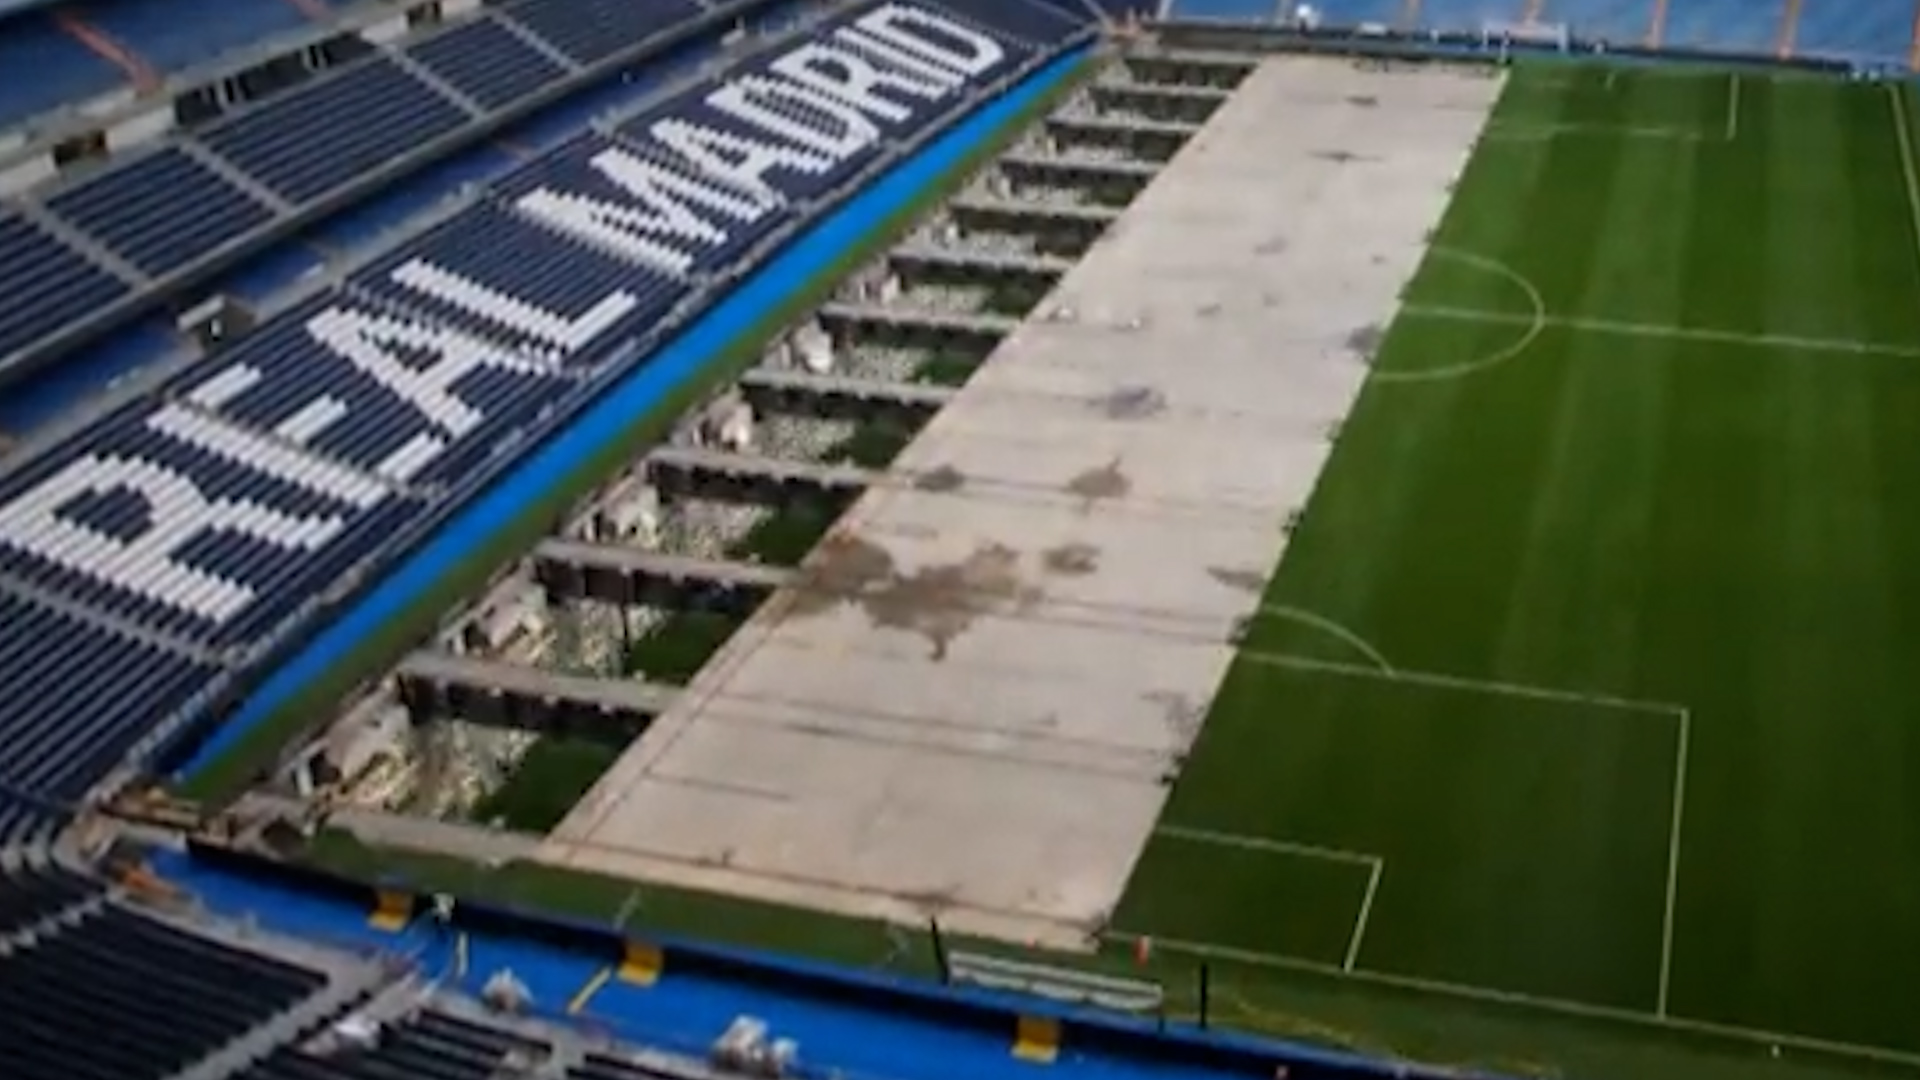 El estadio Santiago Bernabéu, en donde juega el Real Madrid, cuenta con un  césped retractil, tras su remodelación